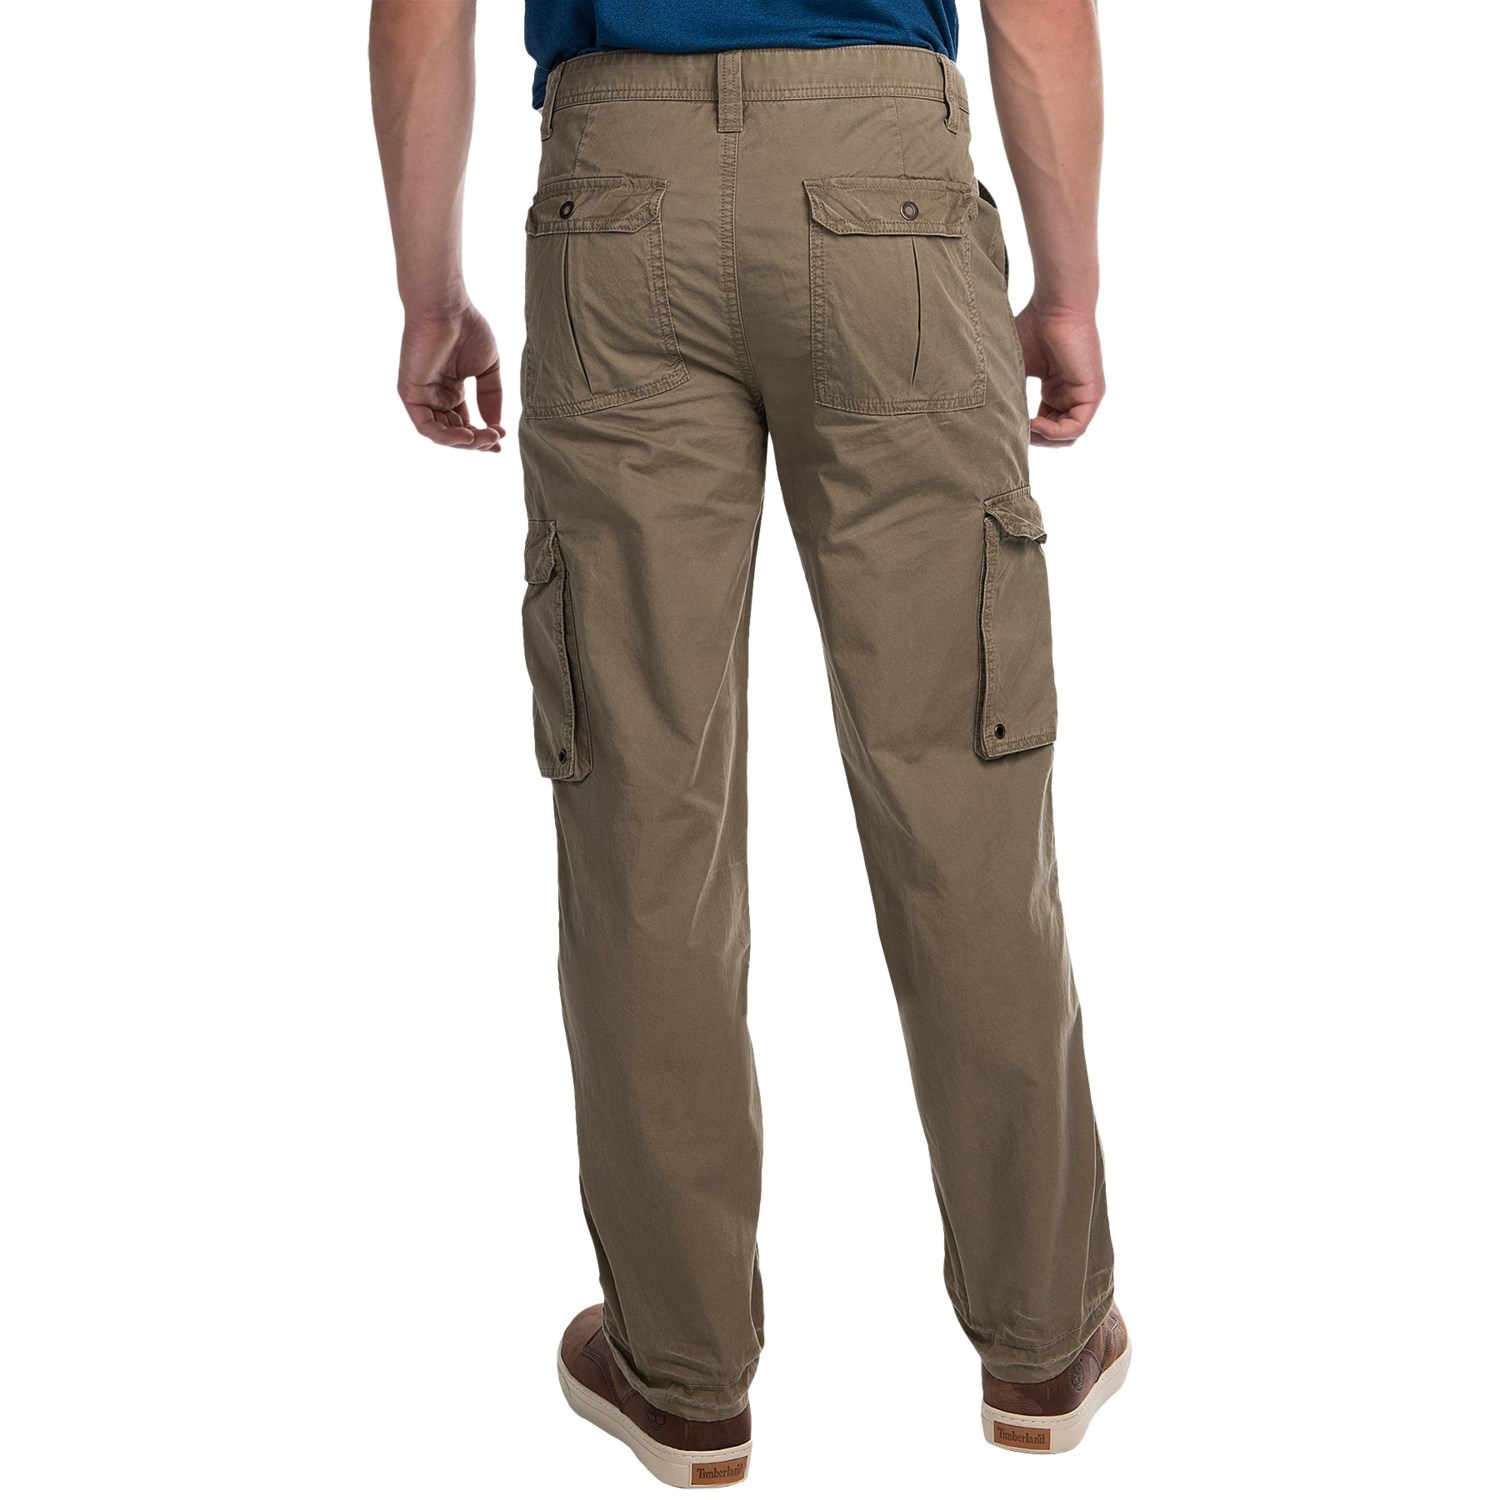 JKL Twill Cargo Pants (For Men) - Save 78%